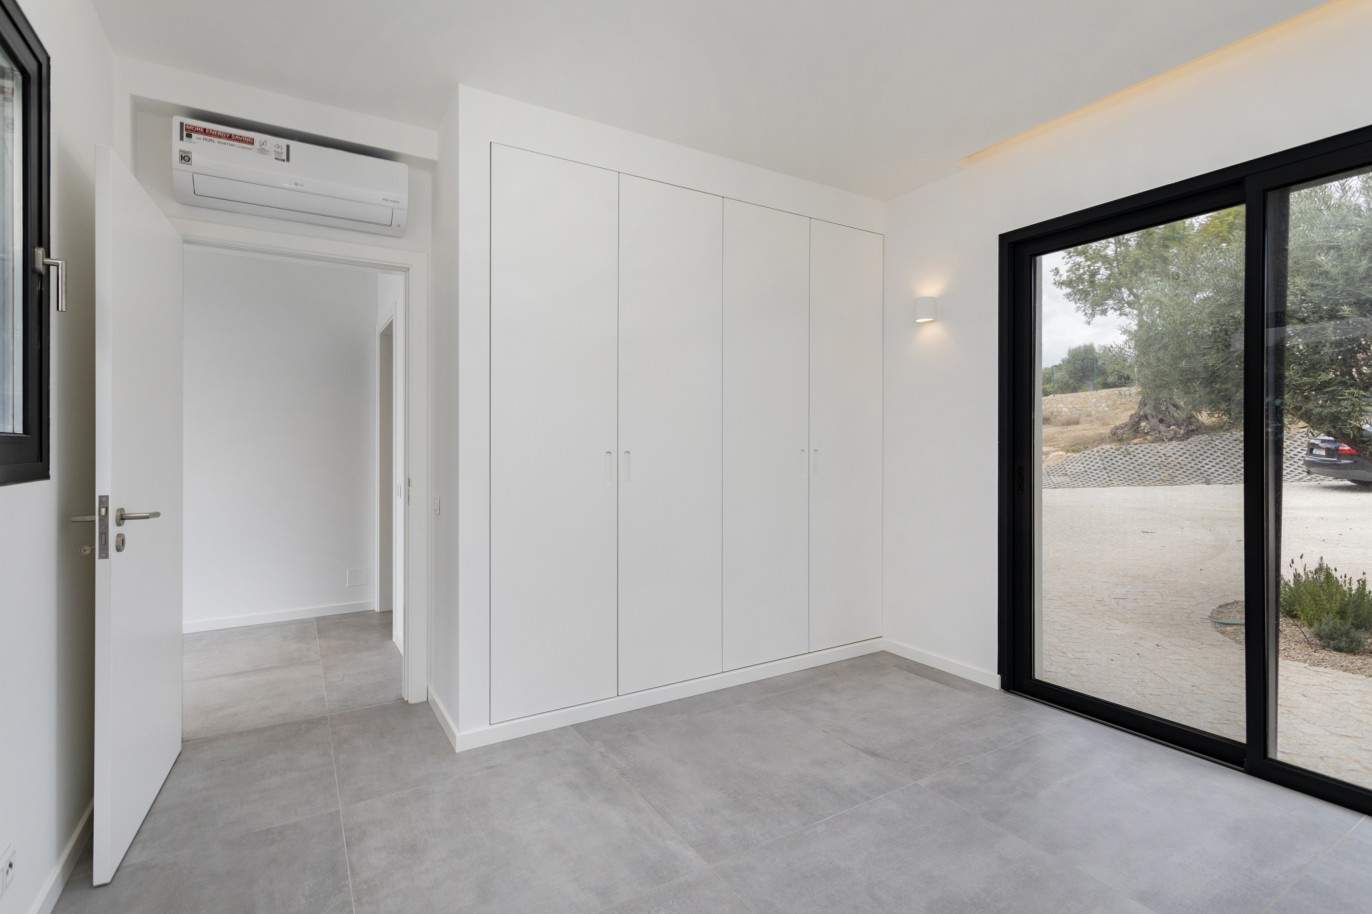 Villa de 4 dormitorios con piscina, en venta en S.Clemente, Loulé, Algarve_201802